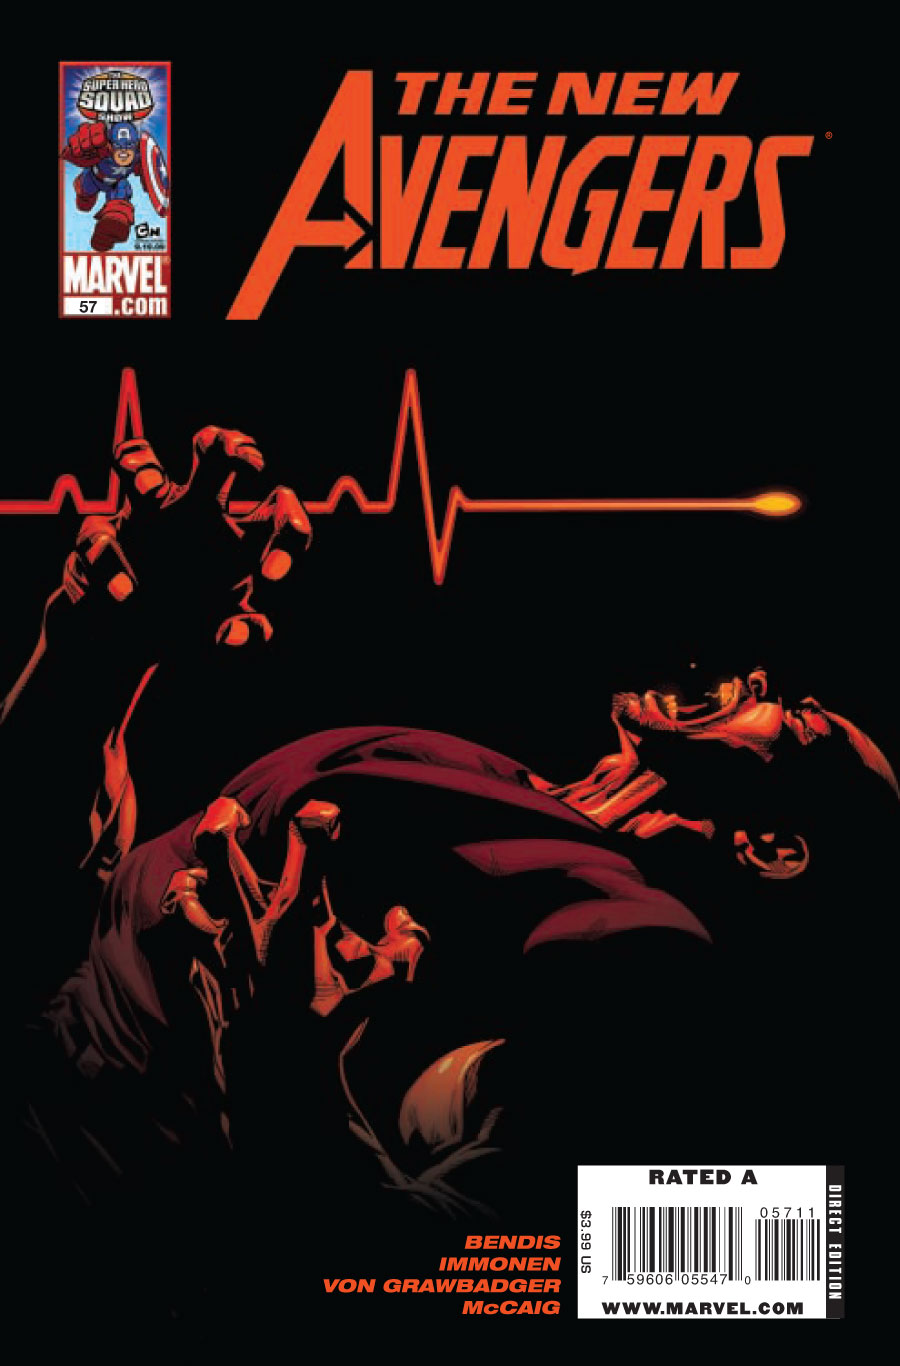 [New+Avengers.jpg]